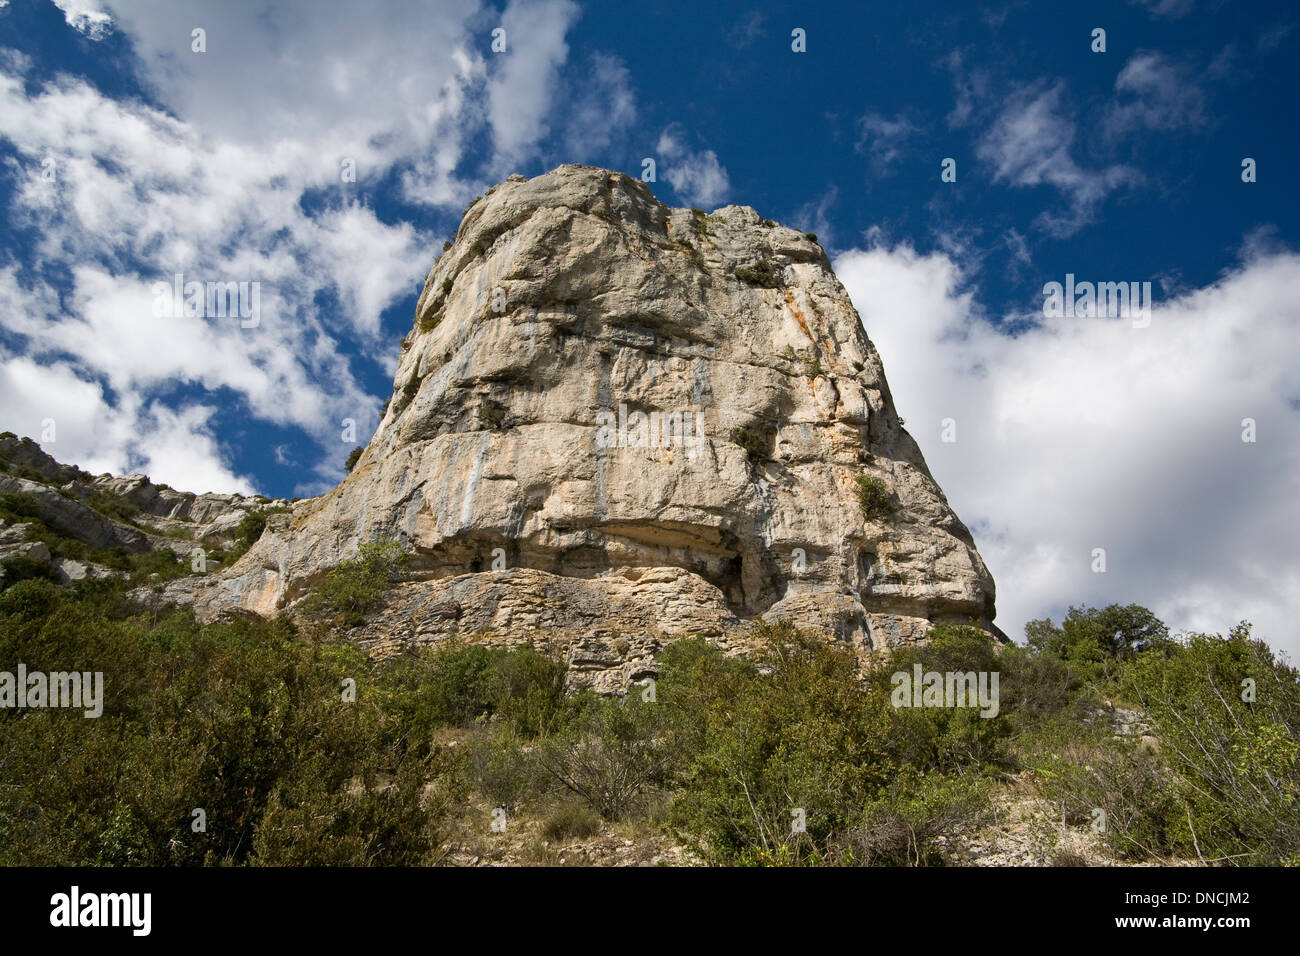 Rock, près de circ de Navacelle Langeudoc, dans le sud de la France Banque D'Images